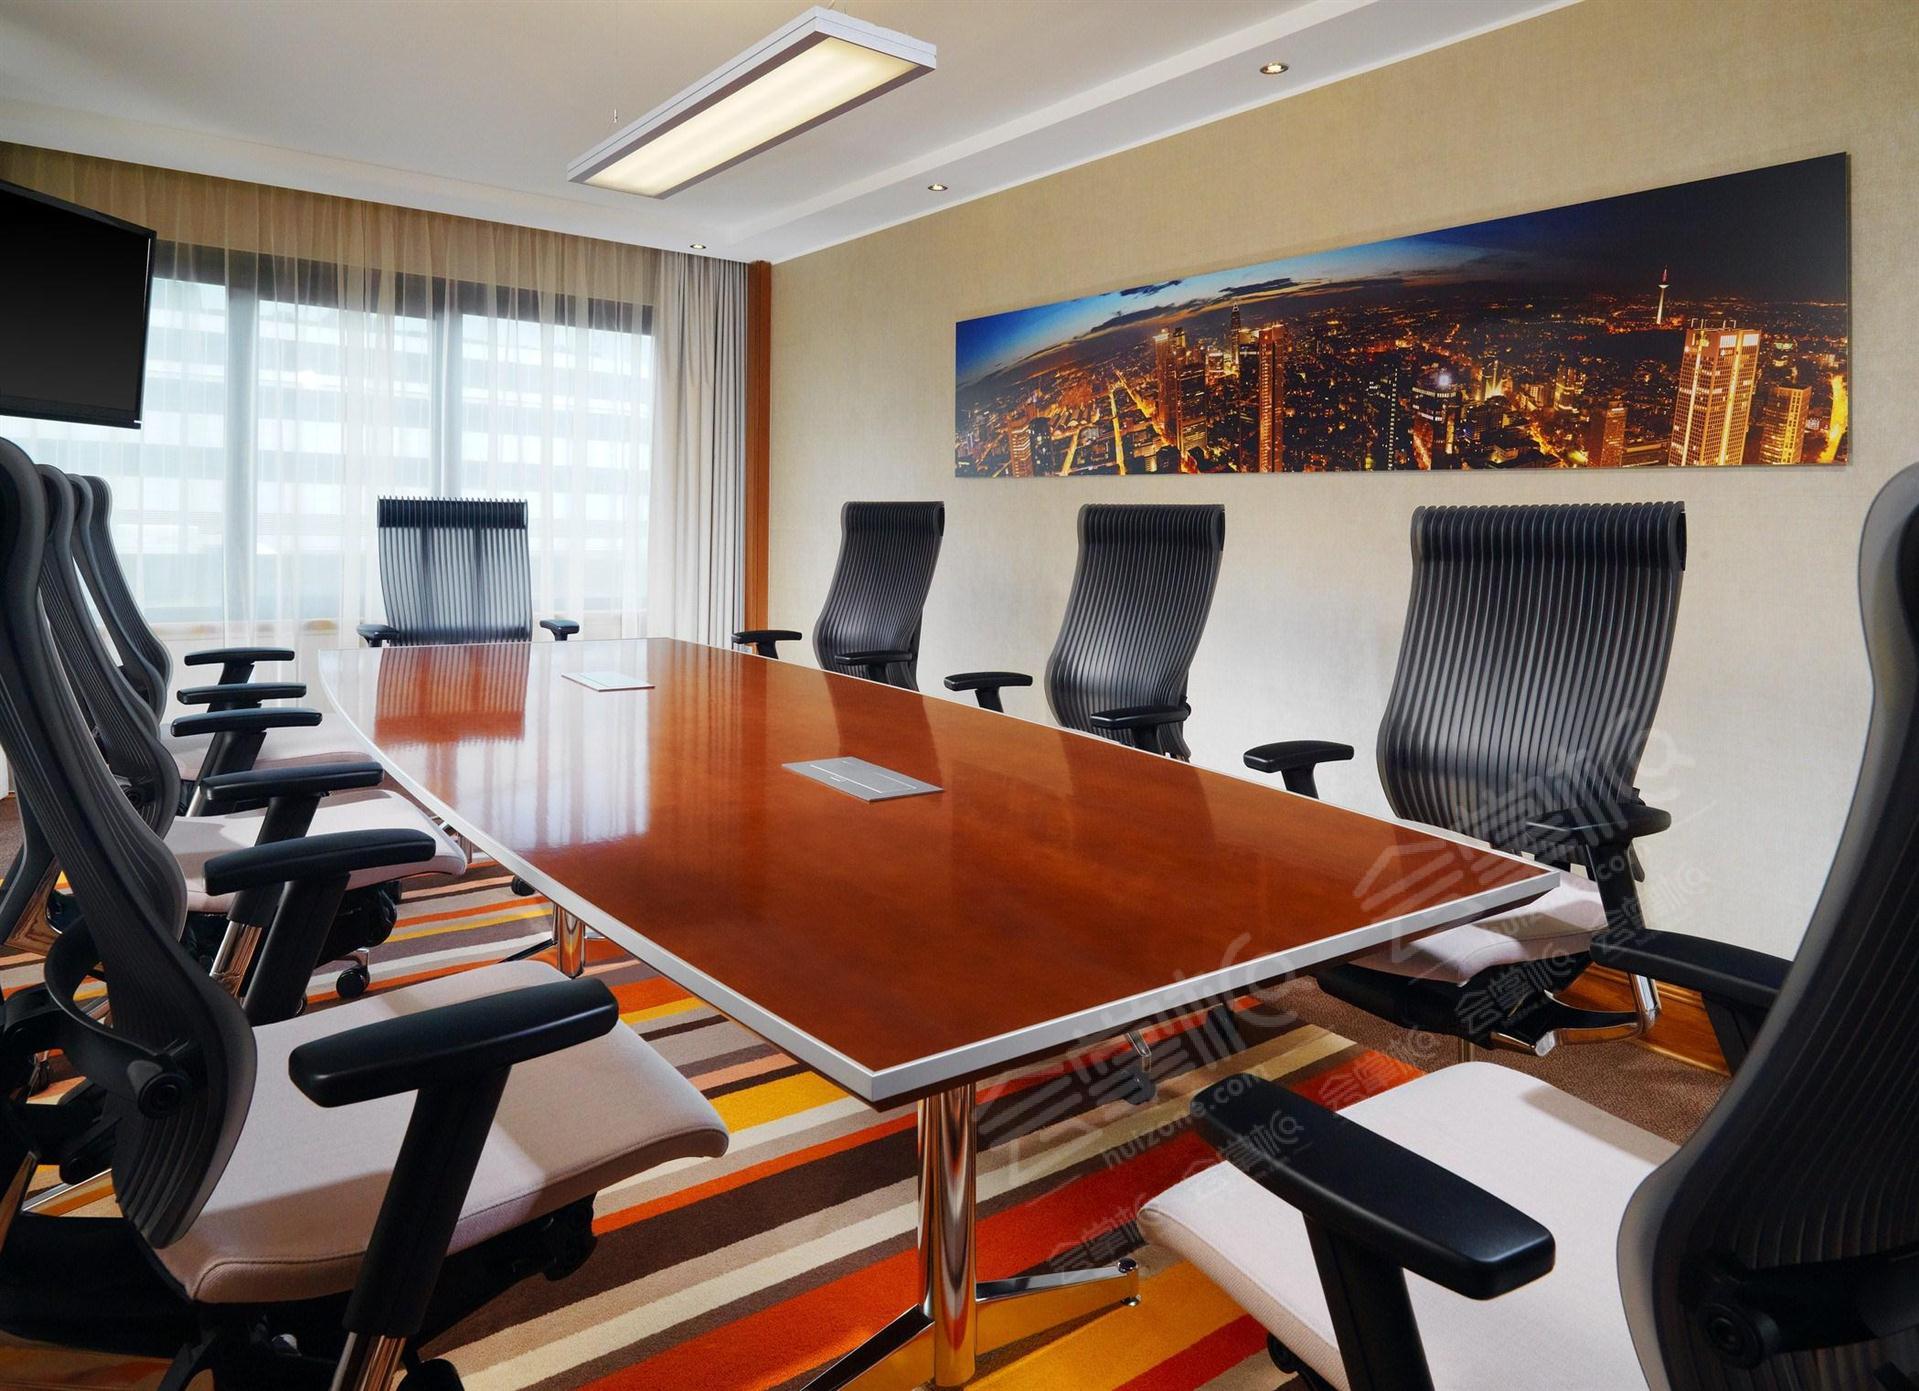 Meeting Room 2022